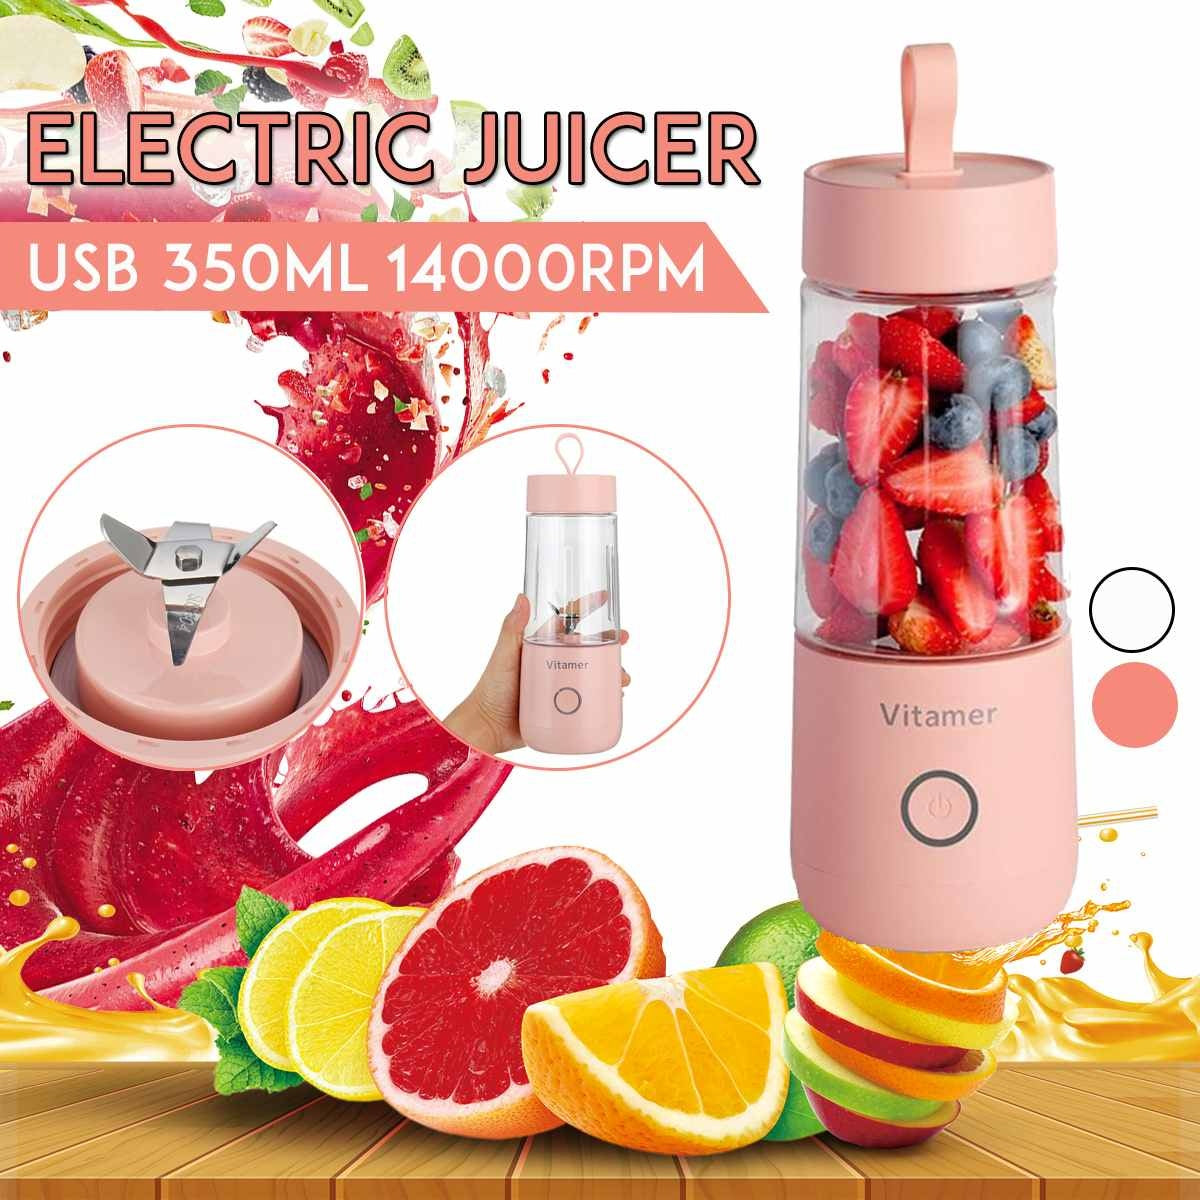 Portable Juicer Blender - Electric Juicer Blender | Pinnacle Home